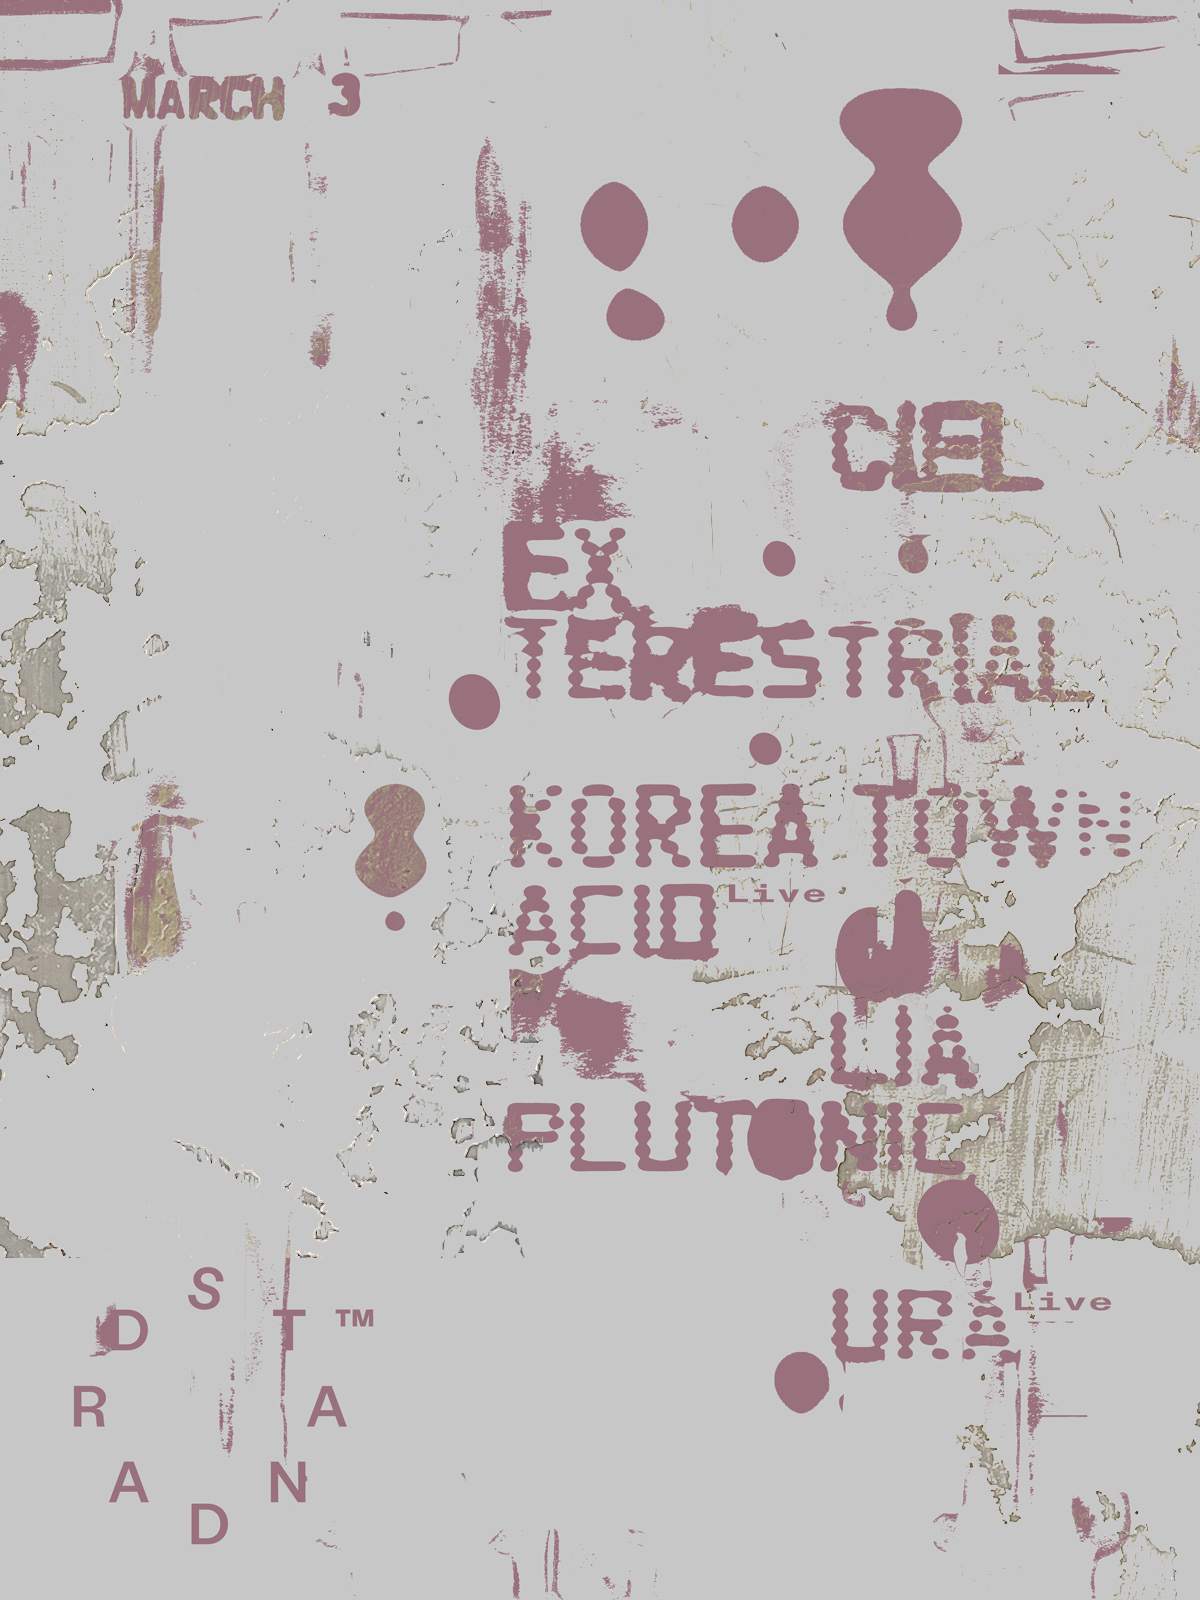 016 ex terrestrial, Ciel, URA, Lia Plutonic and Korea Town Acid - Página frontal